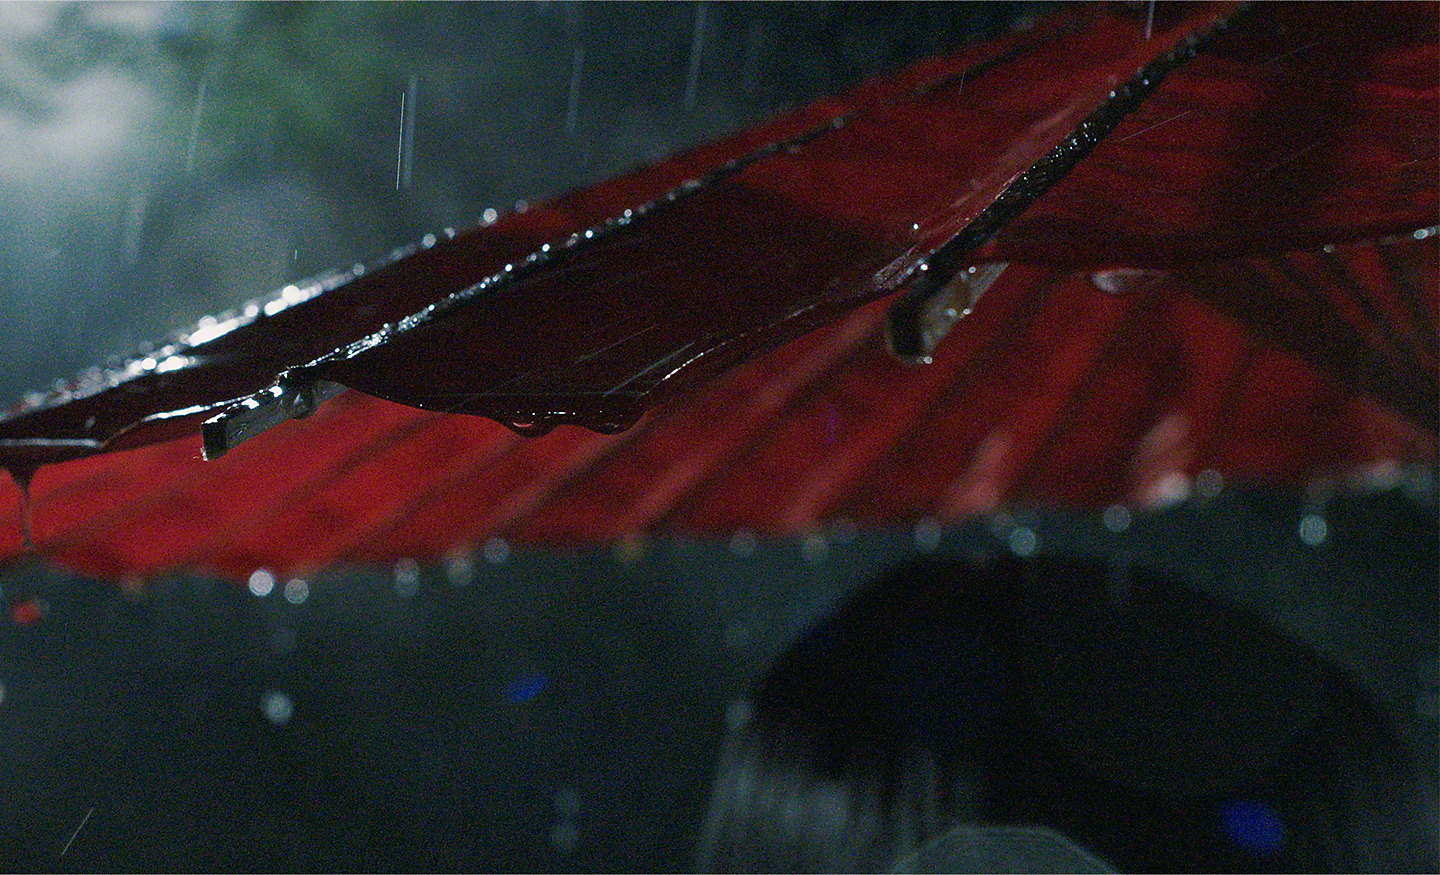 Pioggia che cade su un parasole rosso